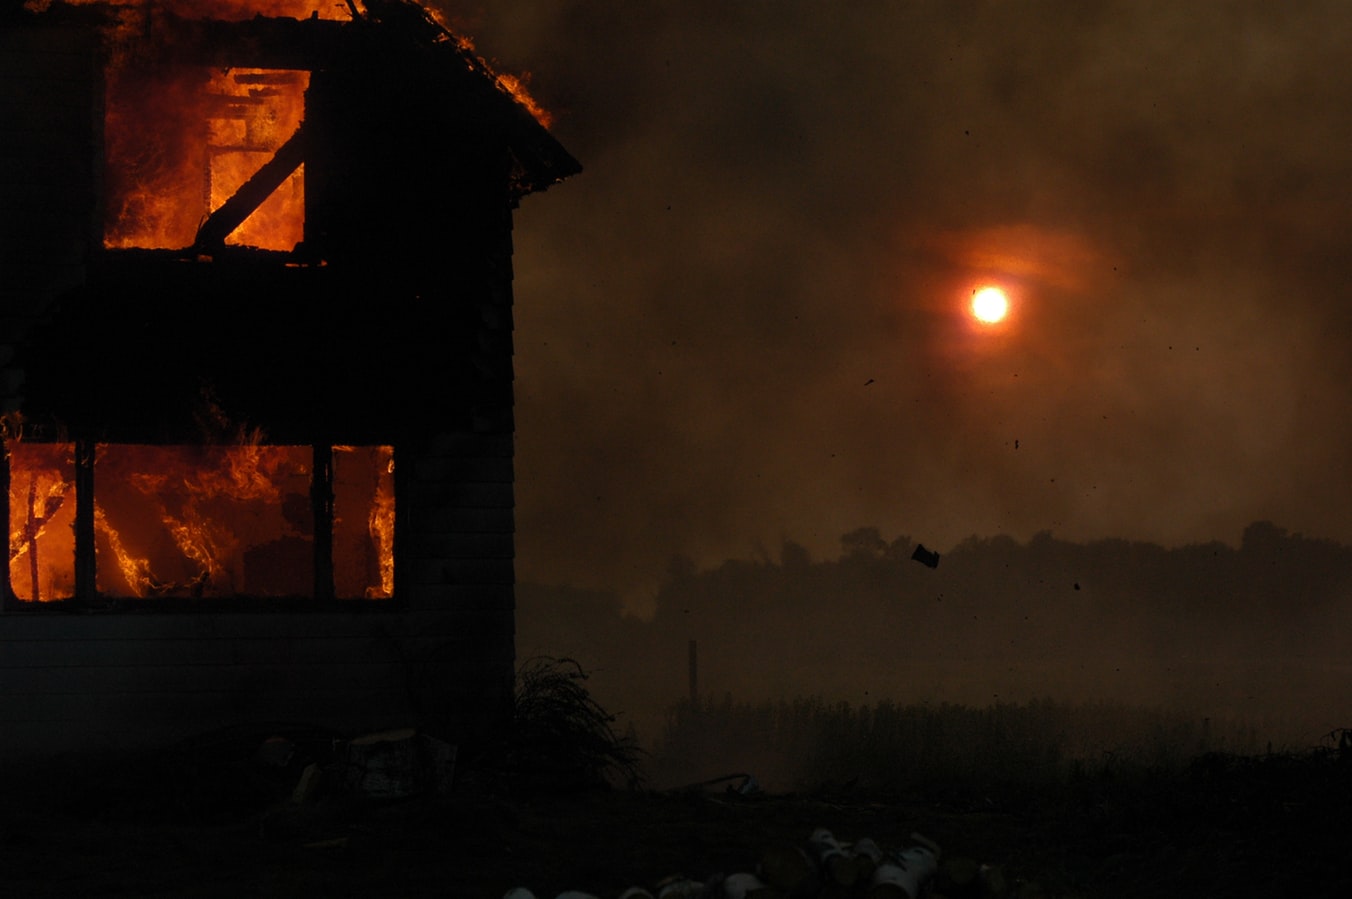 Burning House With Smoky Sunset